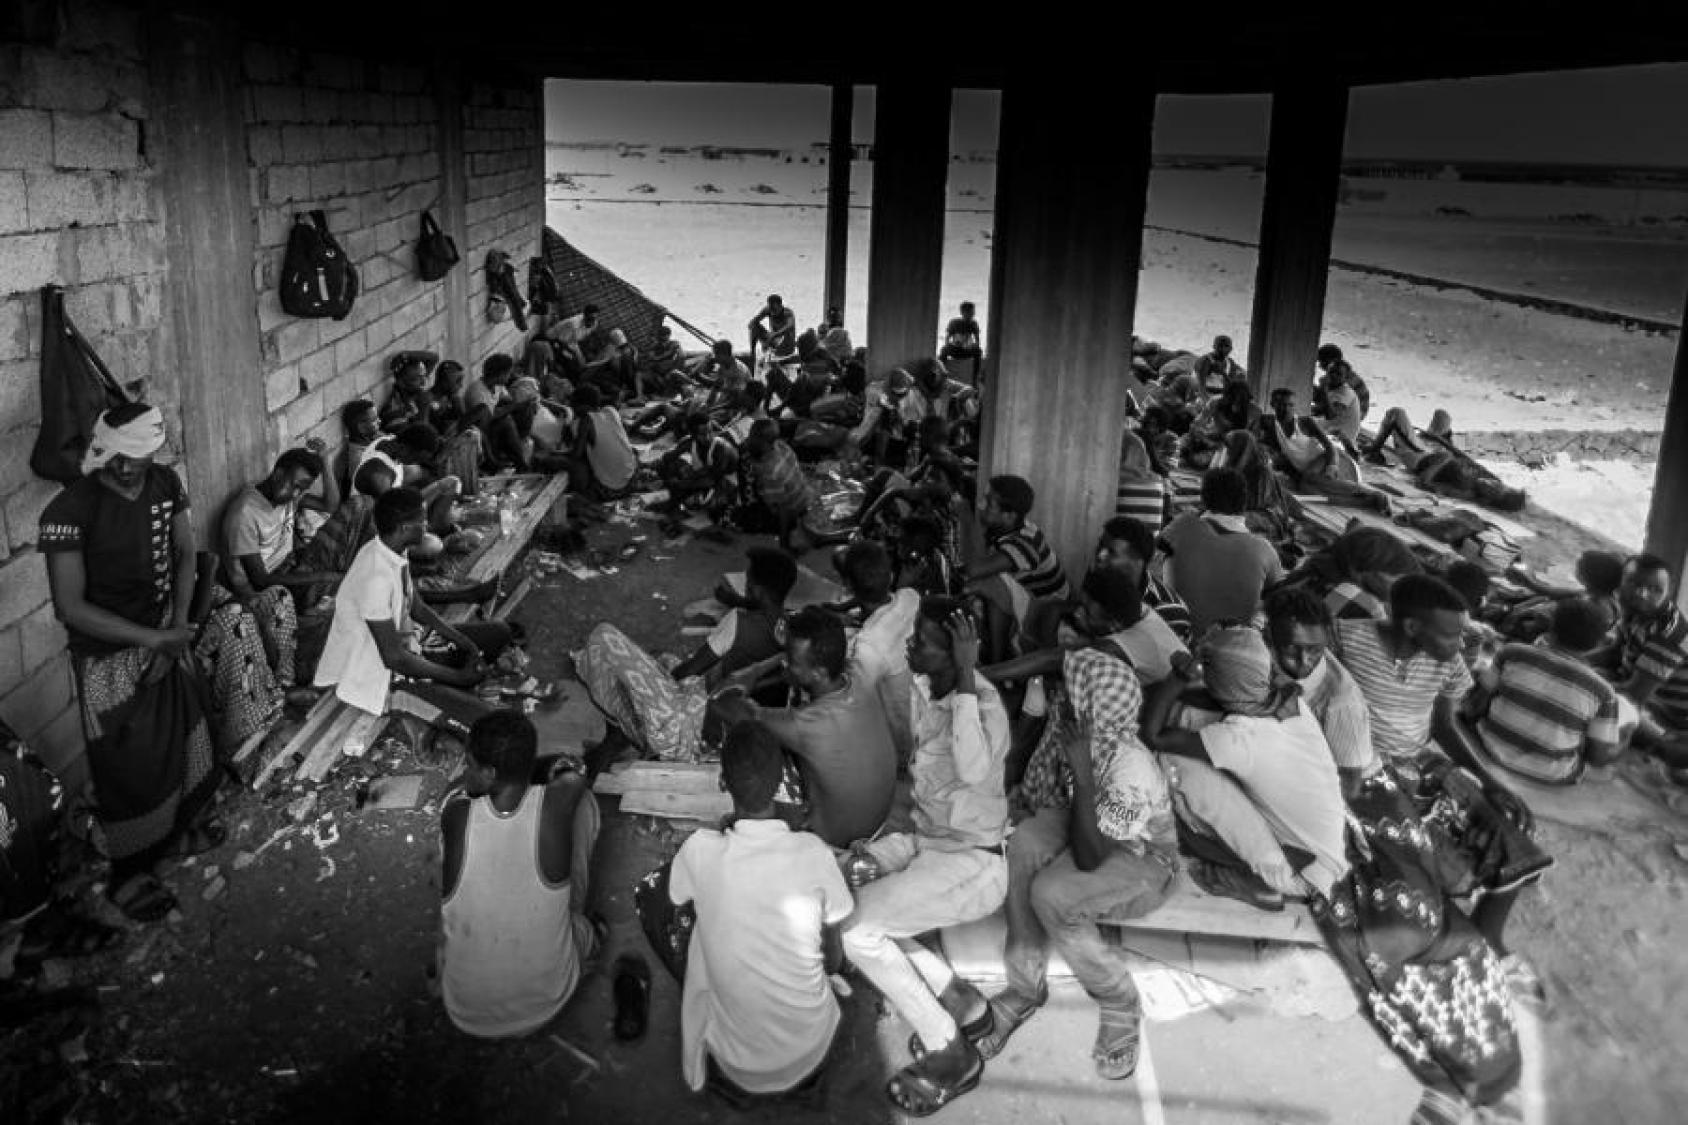 Una imagen en blanco y negro de muchas personas sentadas estrechamente en el suelo.